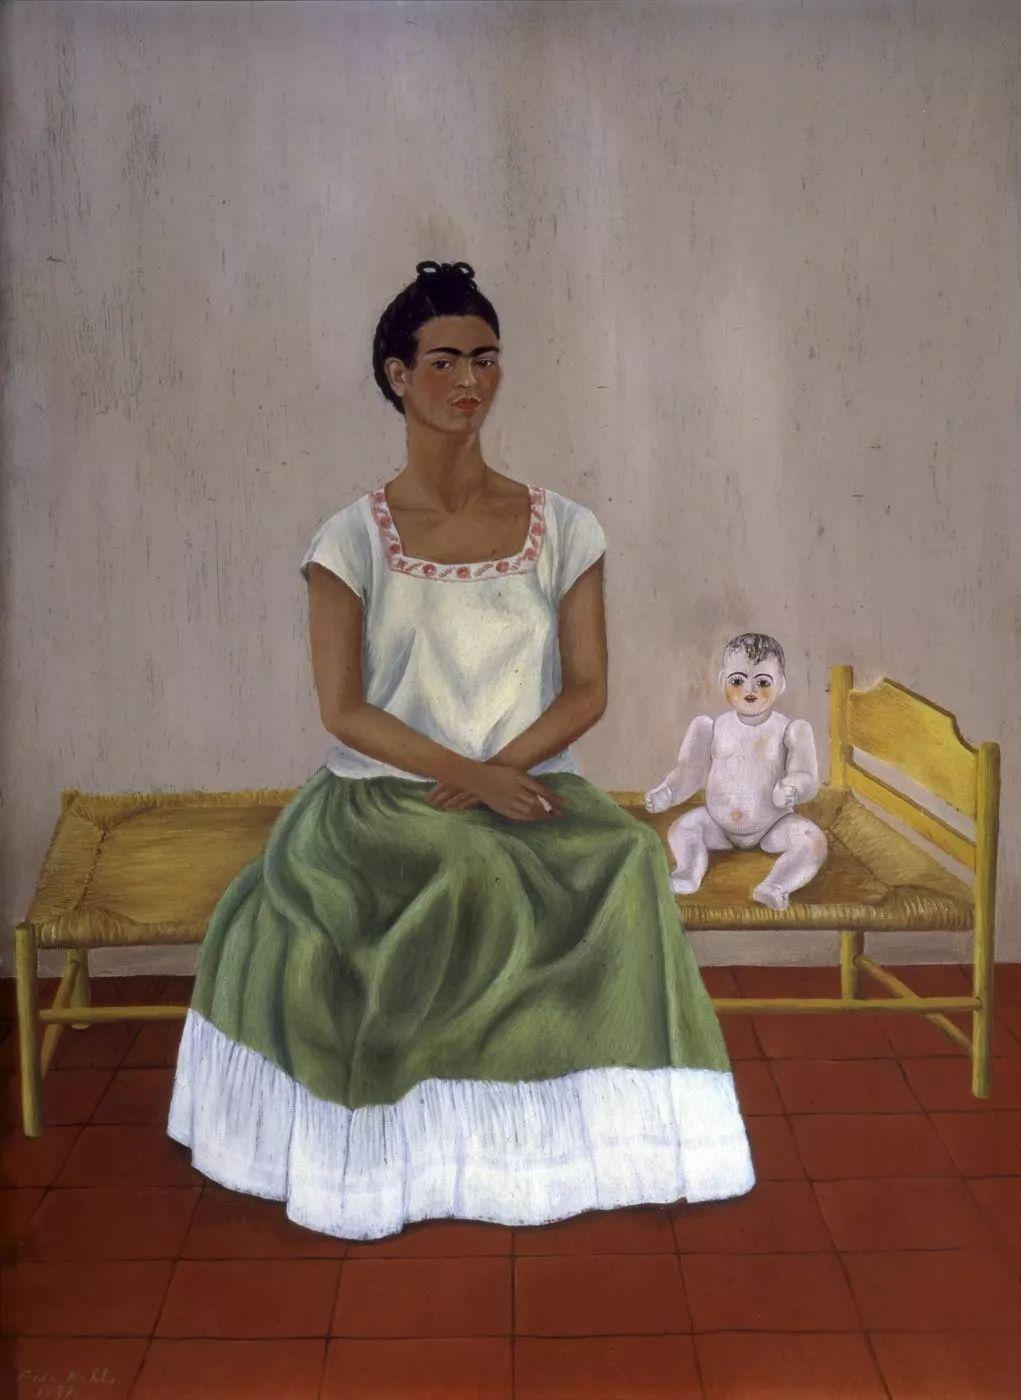 一生坎坷,作品惊艳世人,墨西哥传奇女画家弗里达 